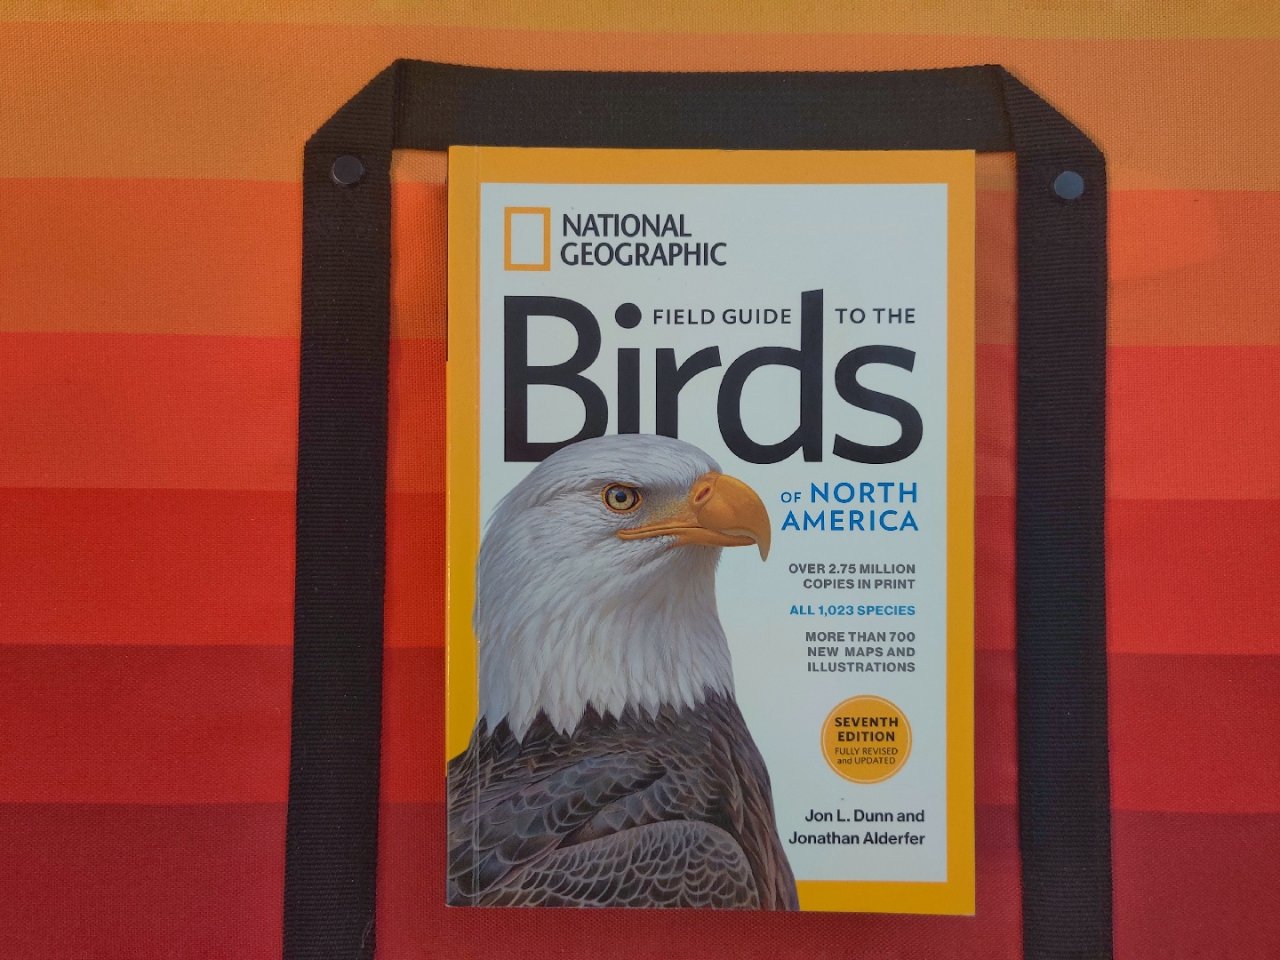 国家地理北美鸟类野外手册 National Geographic Field Guide to the Birds of North America, 7th Edition: Alderfer, Jonathan, Dunn, Jon L.: 9781426218354: Amazon.com: Books